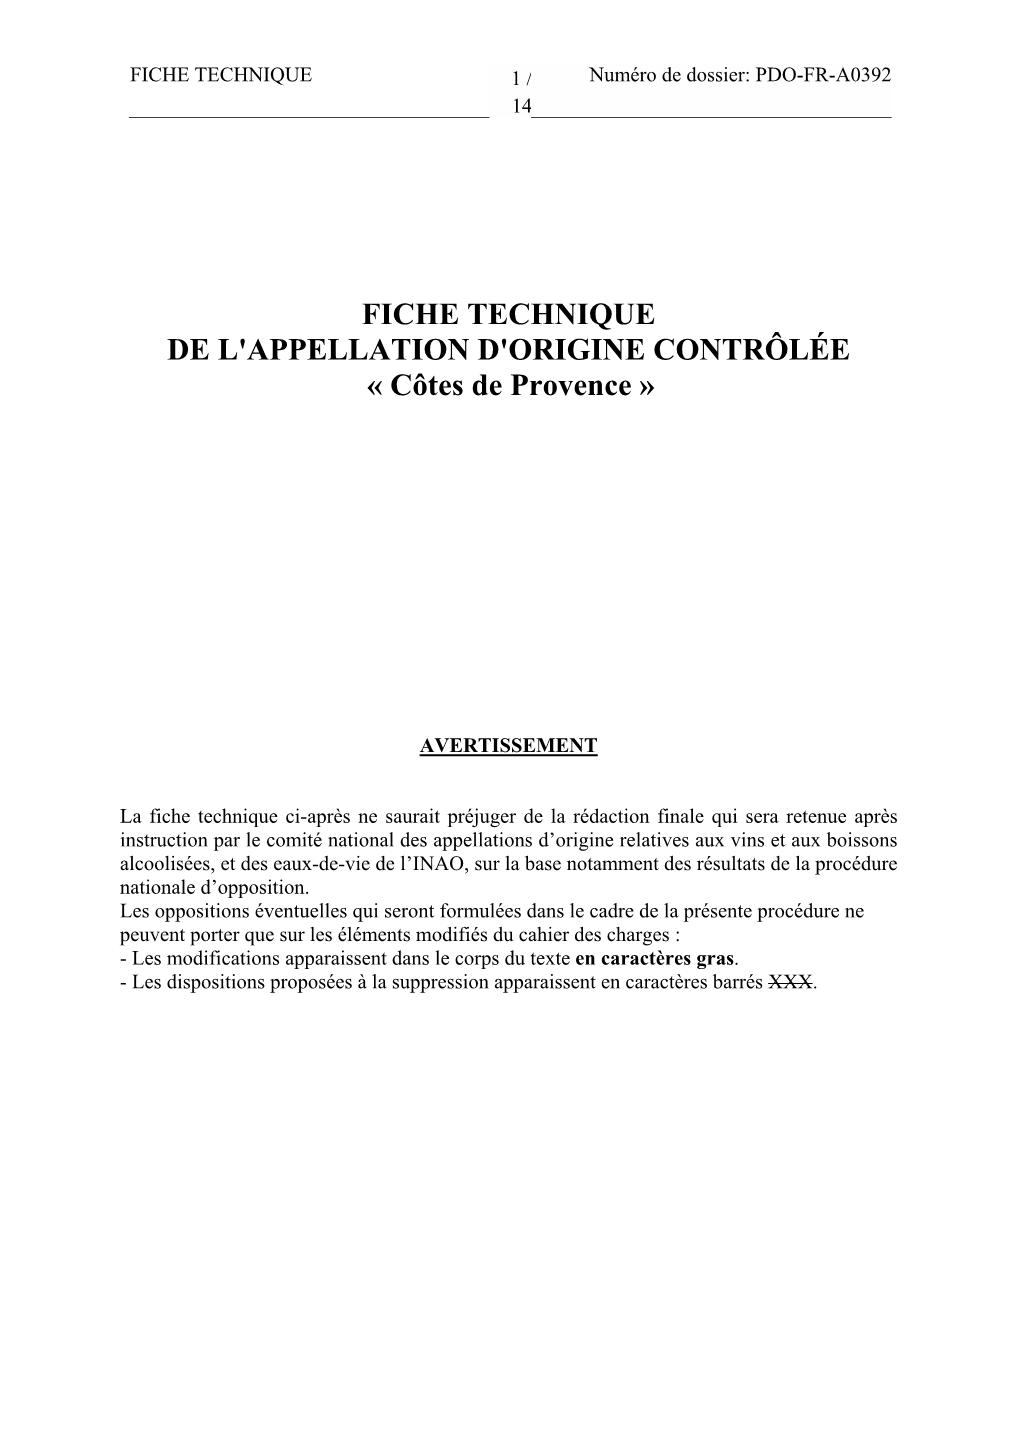 FICHE TECHNIQUE DE L'appellation D'origine CONTRÔLÉE « Côtes De Provence »